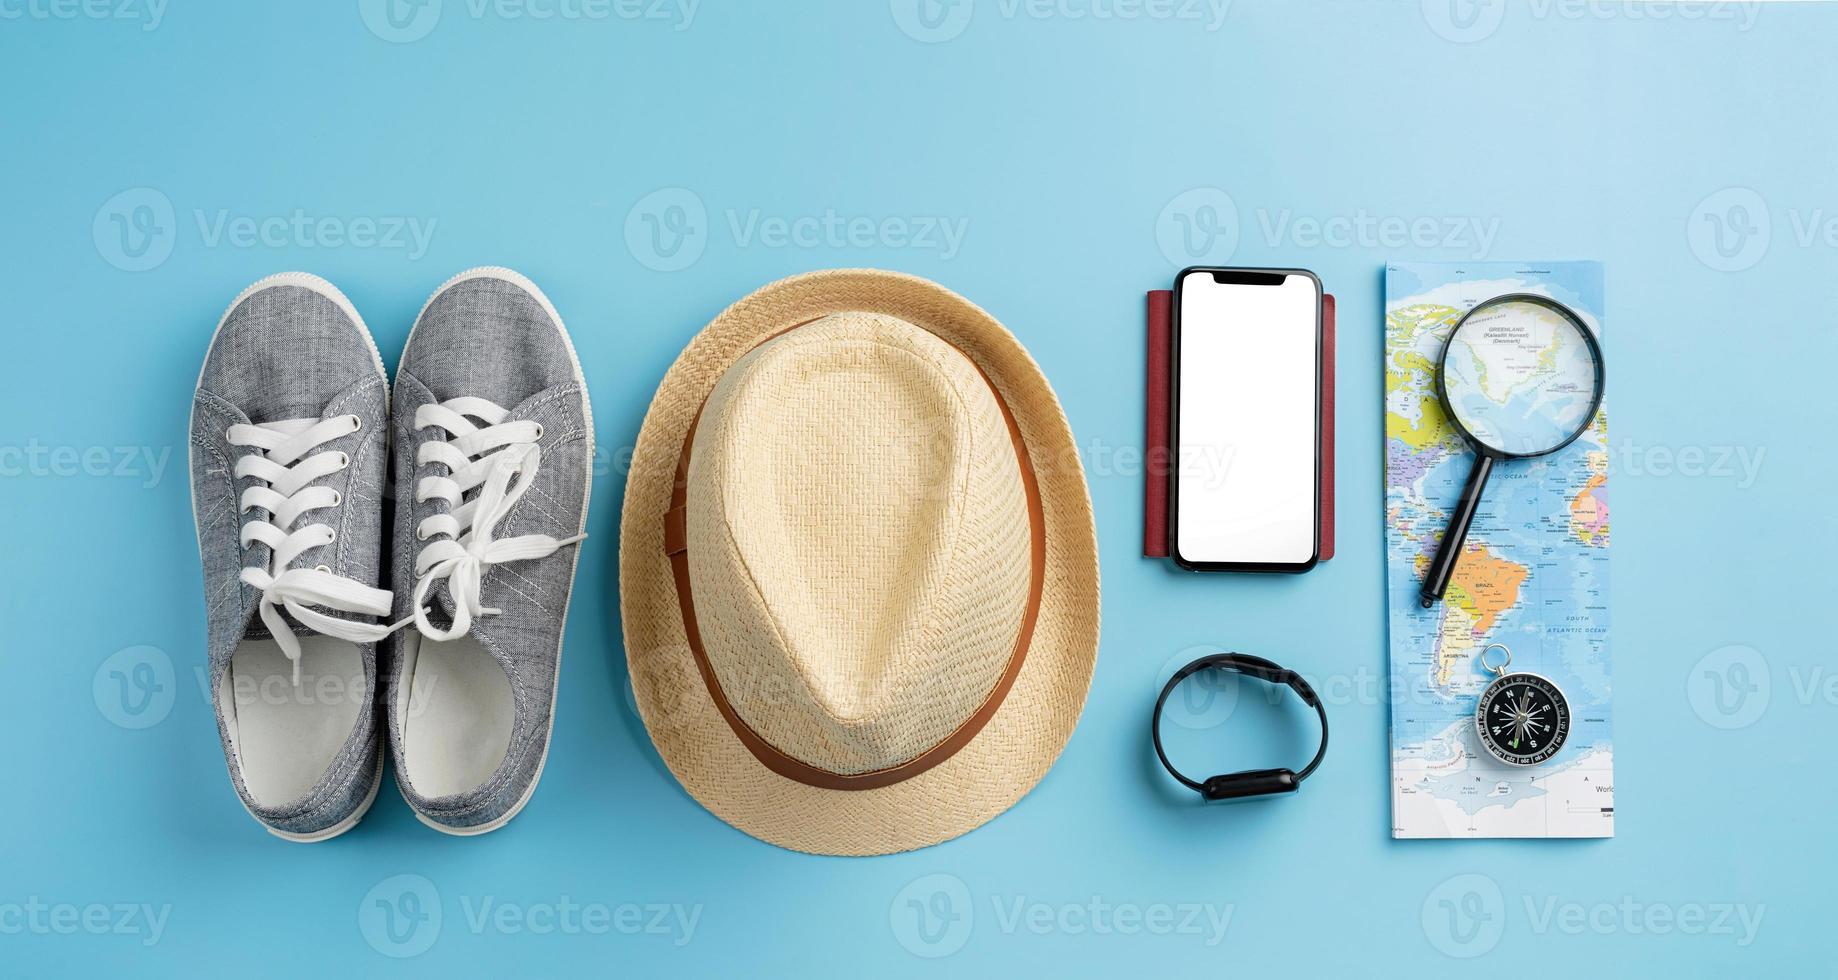 toppvy resetillbehör med skor, karta, smartphone med mockup-skärm, hatt. turistiska nödvändigheter. foto